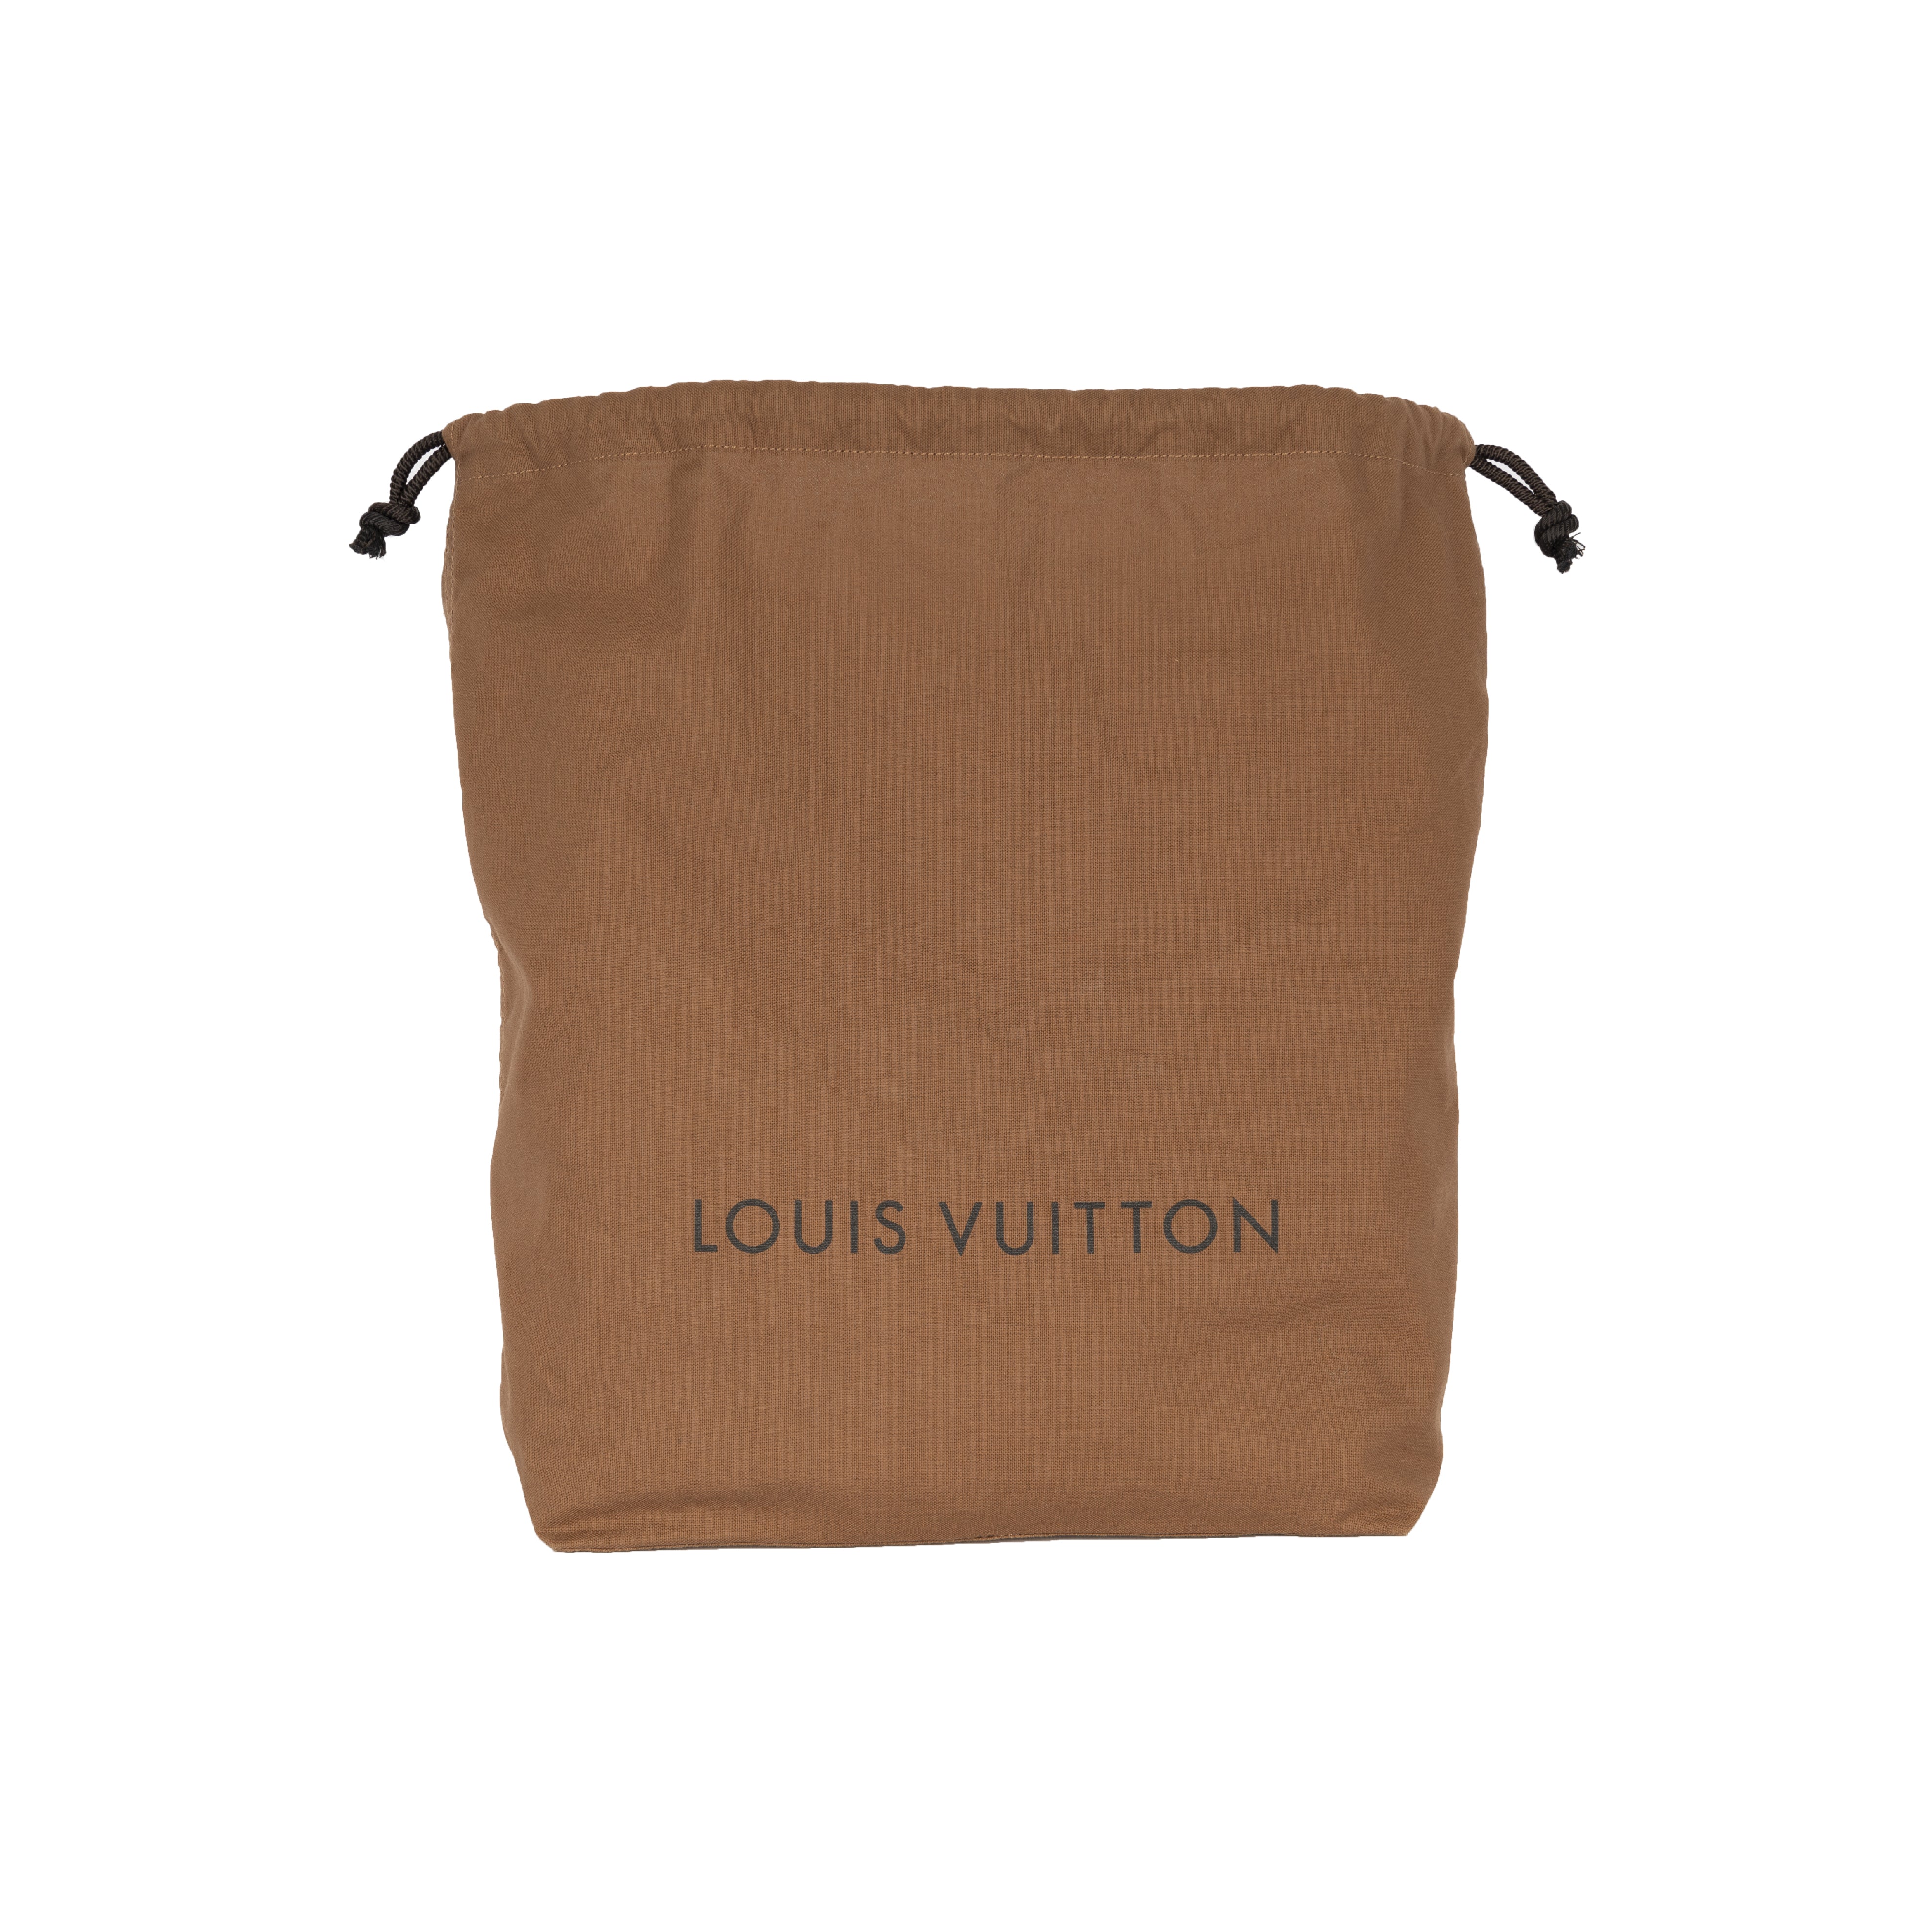 LOUIS VUITTON BAG WITH HOLES TOTE BAG SP4174 COMME DES GARCONS